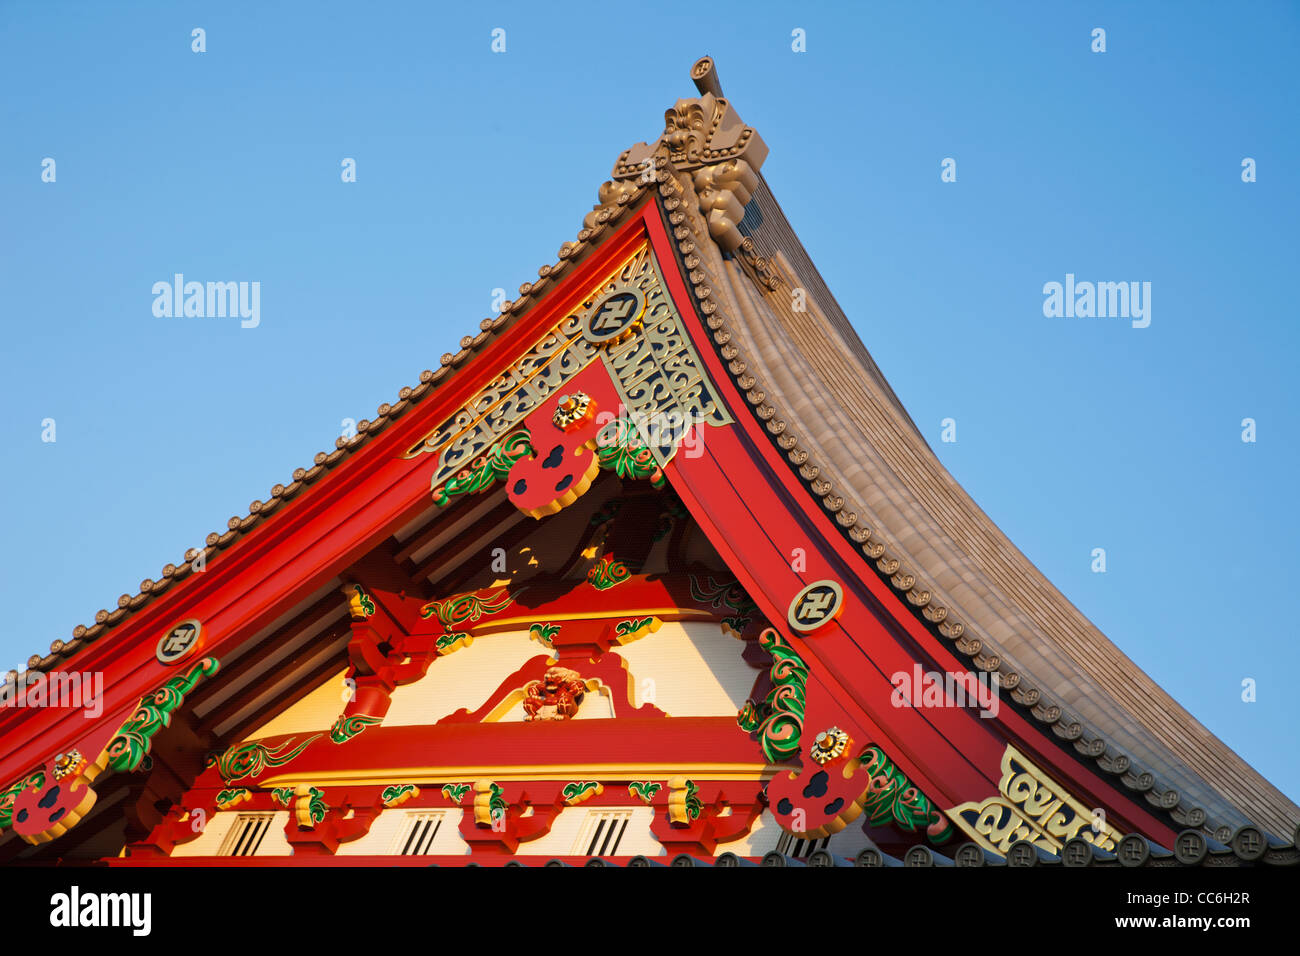 Giappone Tokyo Asakusa, Tempio di Asakusa Kannon, dettaglio del tetto Foto Stock